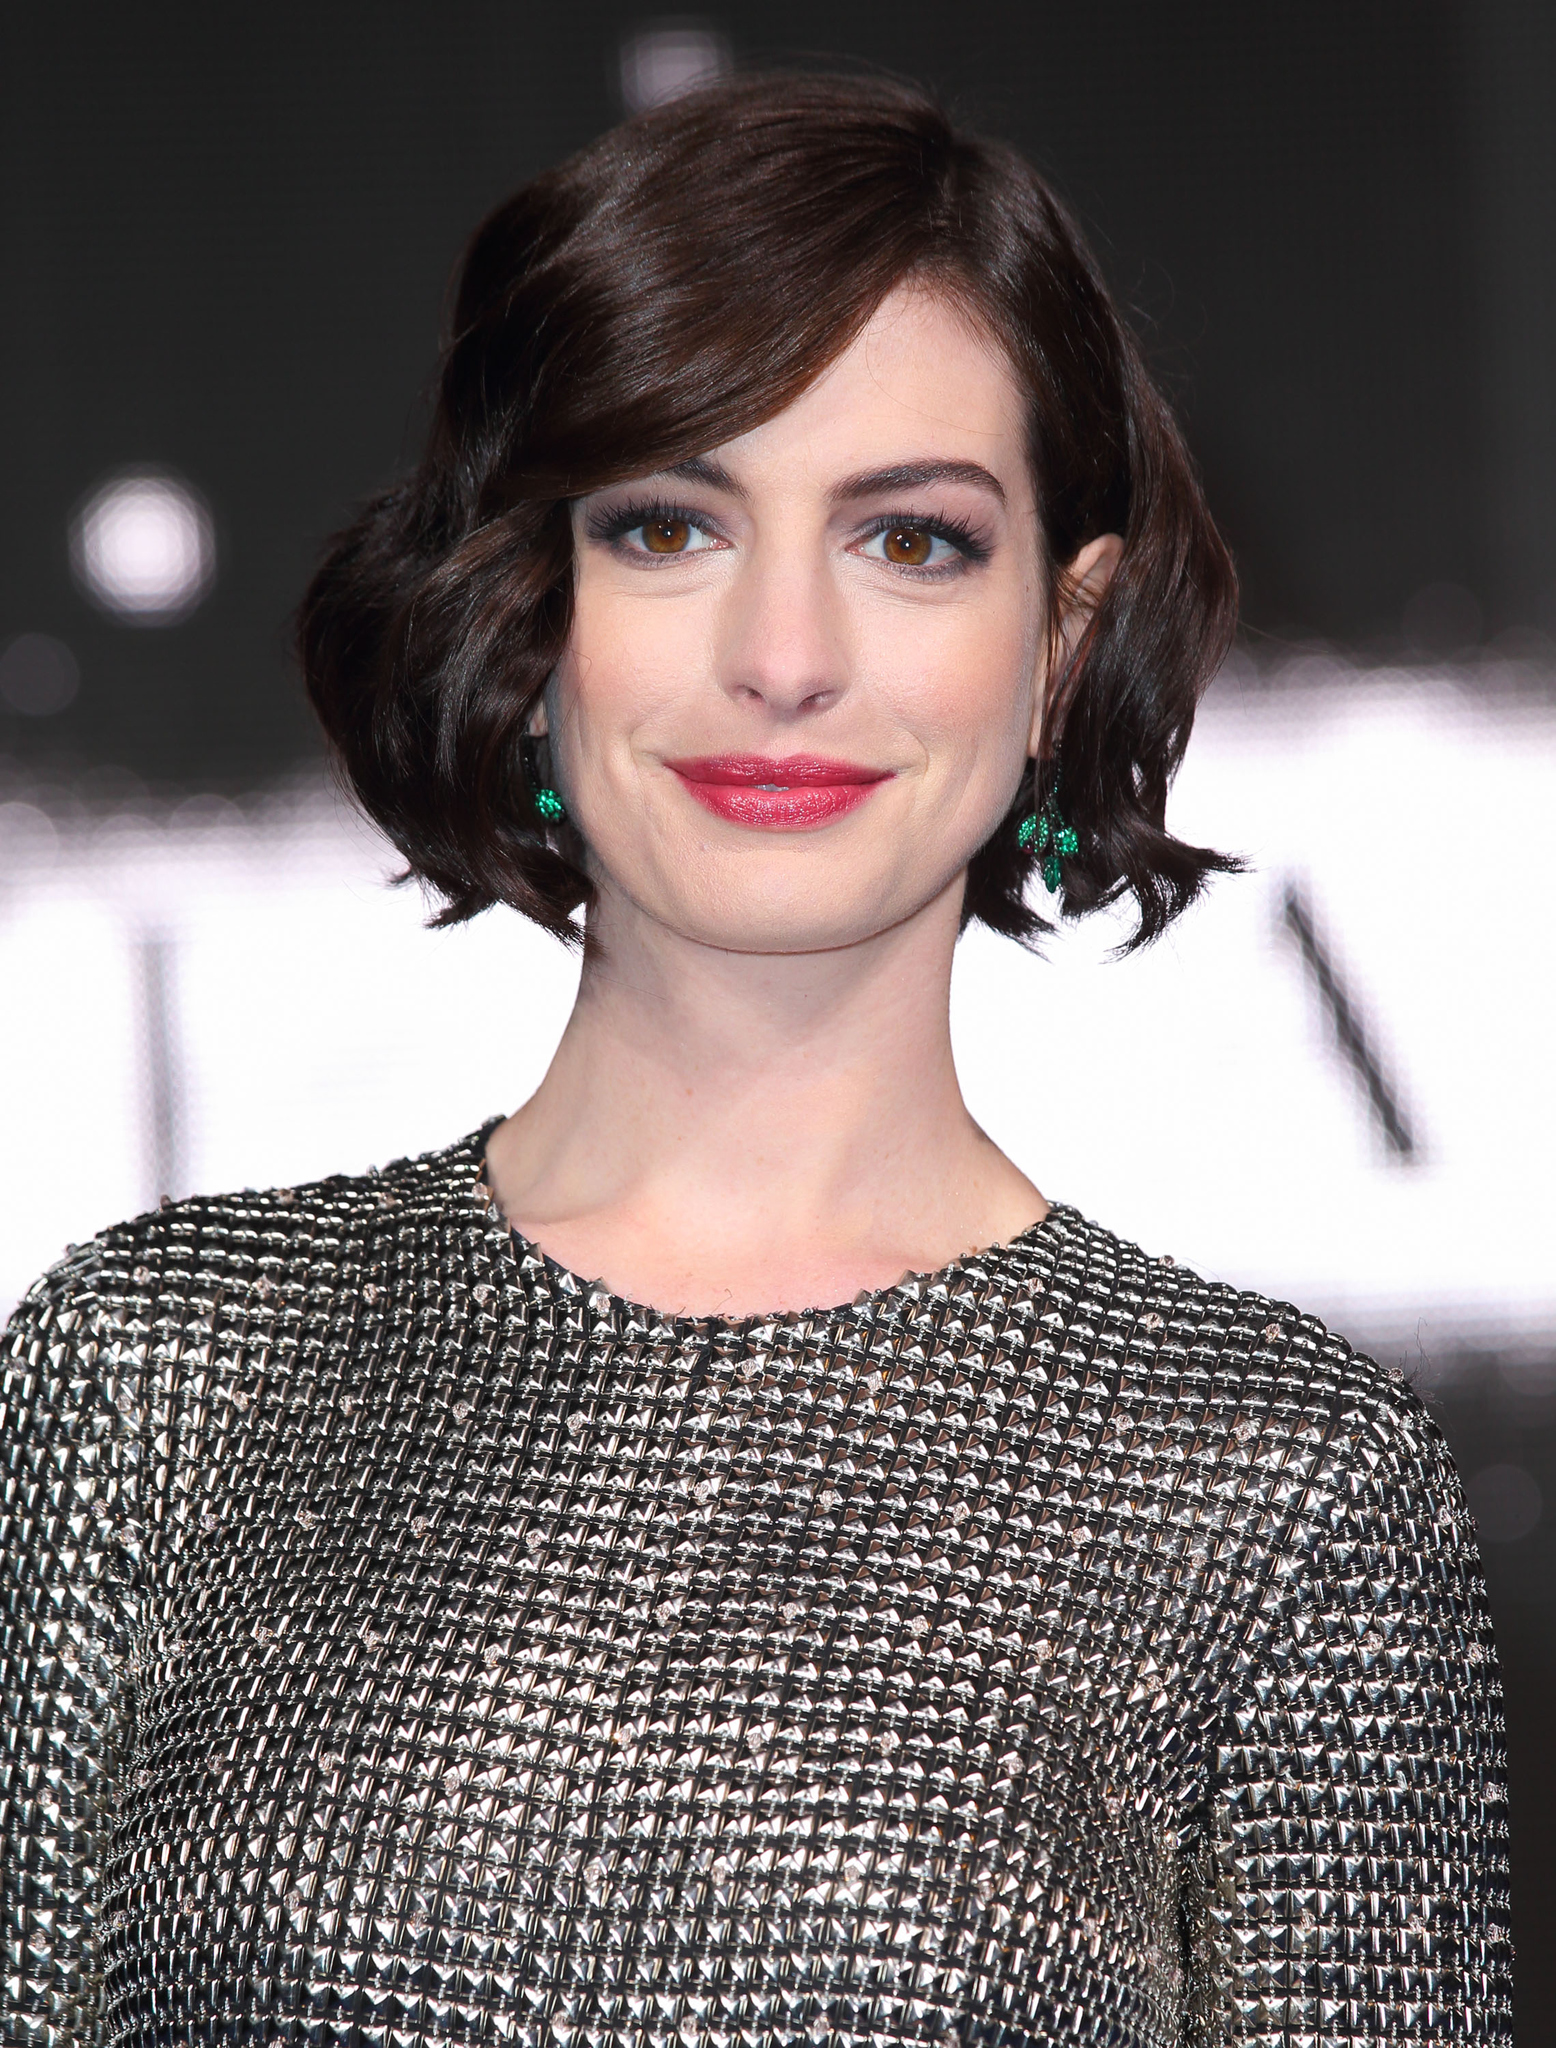 Anne Hathaway at event of Tarp zvaigzdziu (2014)